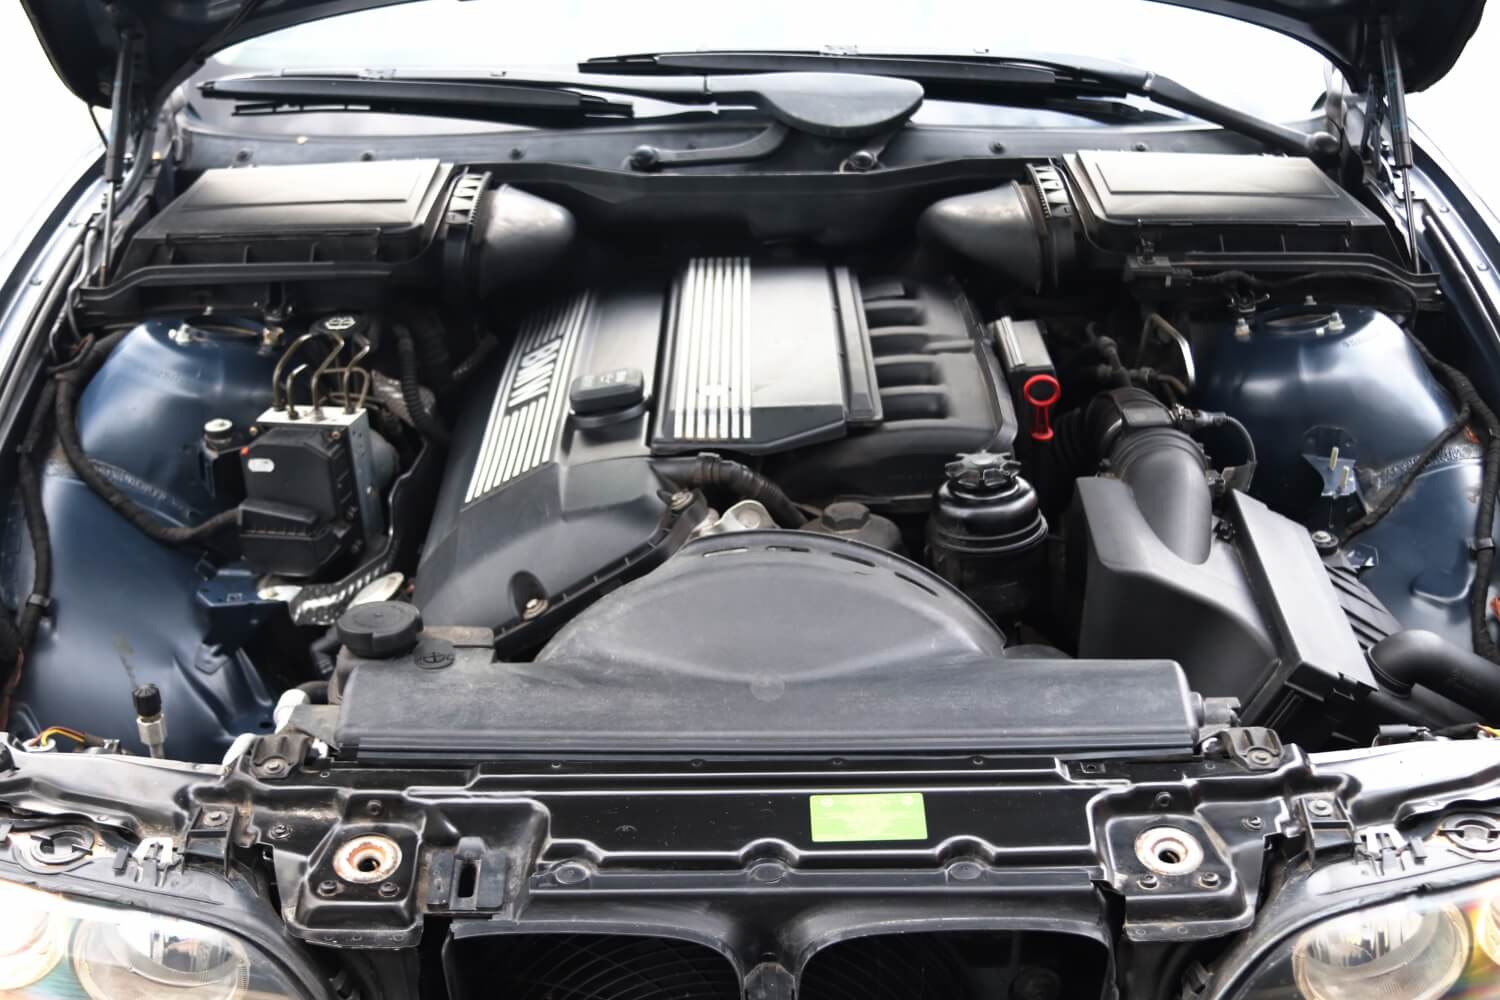 Silnik BMW M52B20TU R6 (2.0L, 110 kW; 148 HP) - specyfikacja